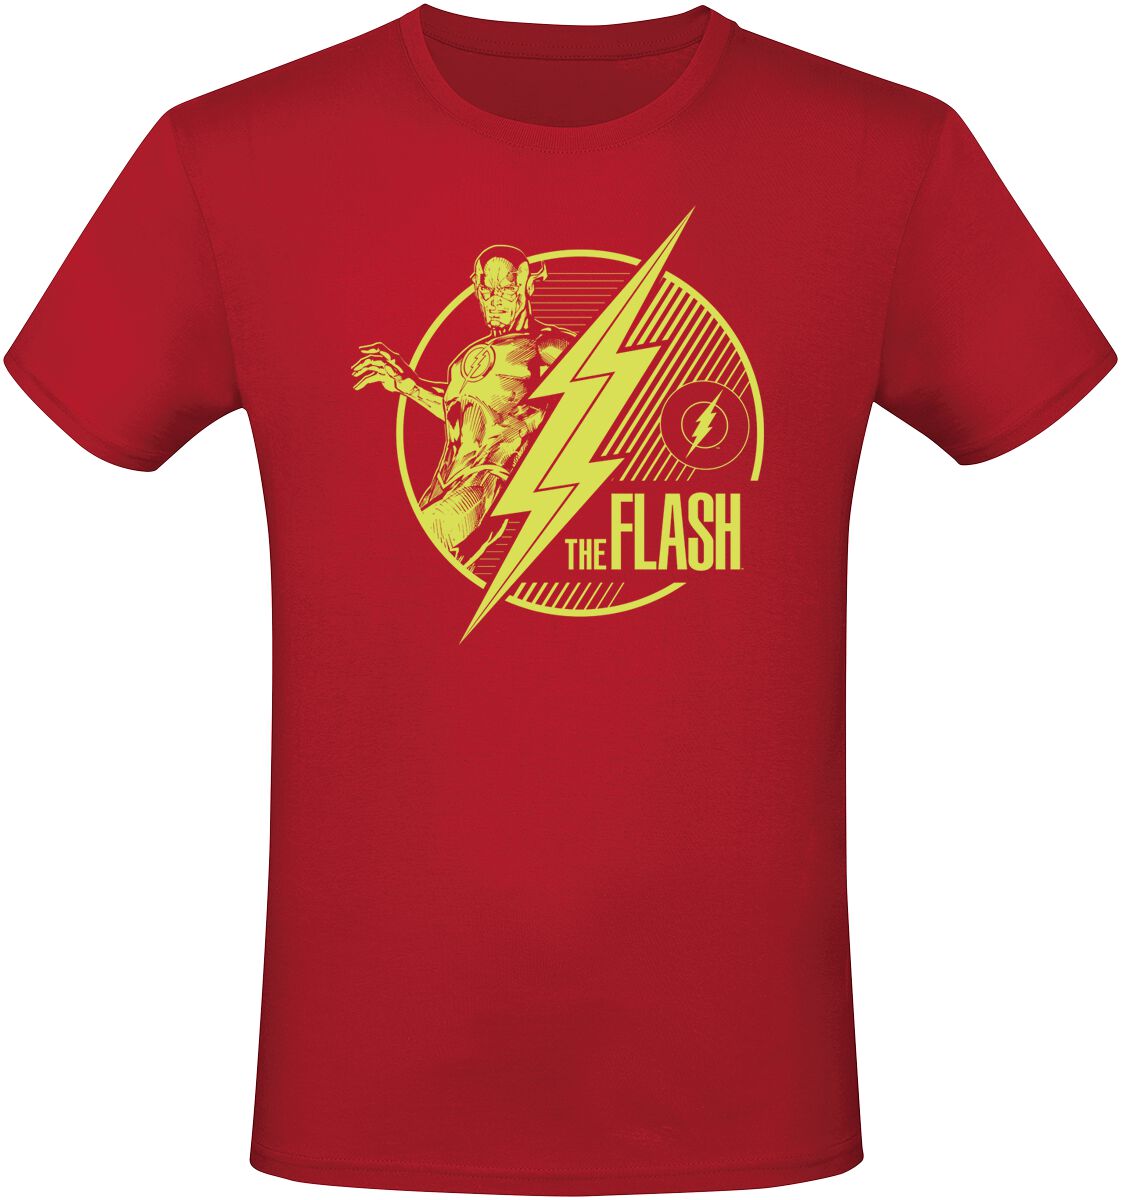 The Flash - DC Comics T-Shirt - Flash - S bis L - für Männer - Größe S - rot  - EMP exklusives Merchandise!